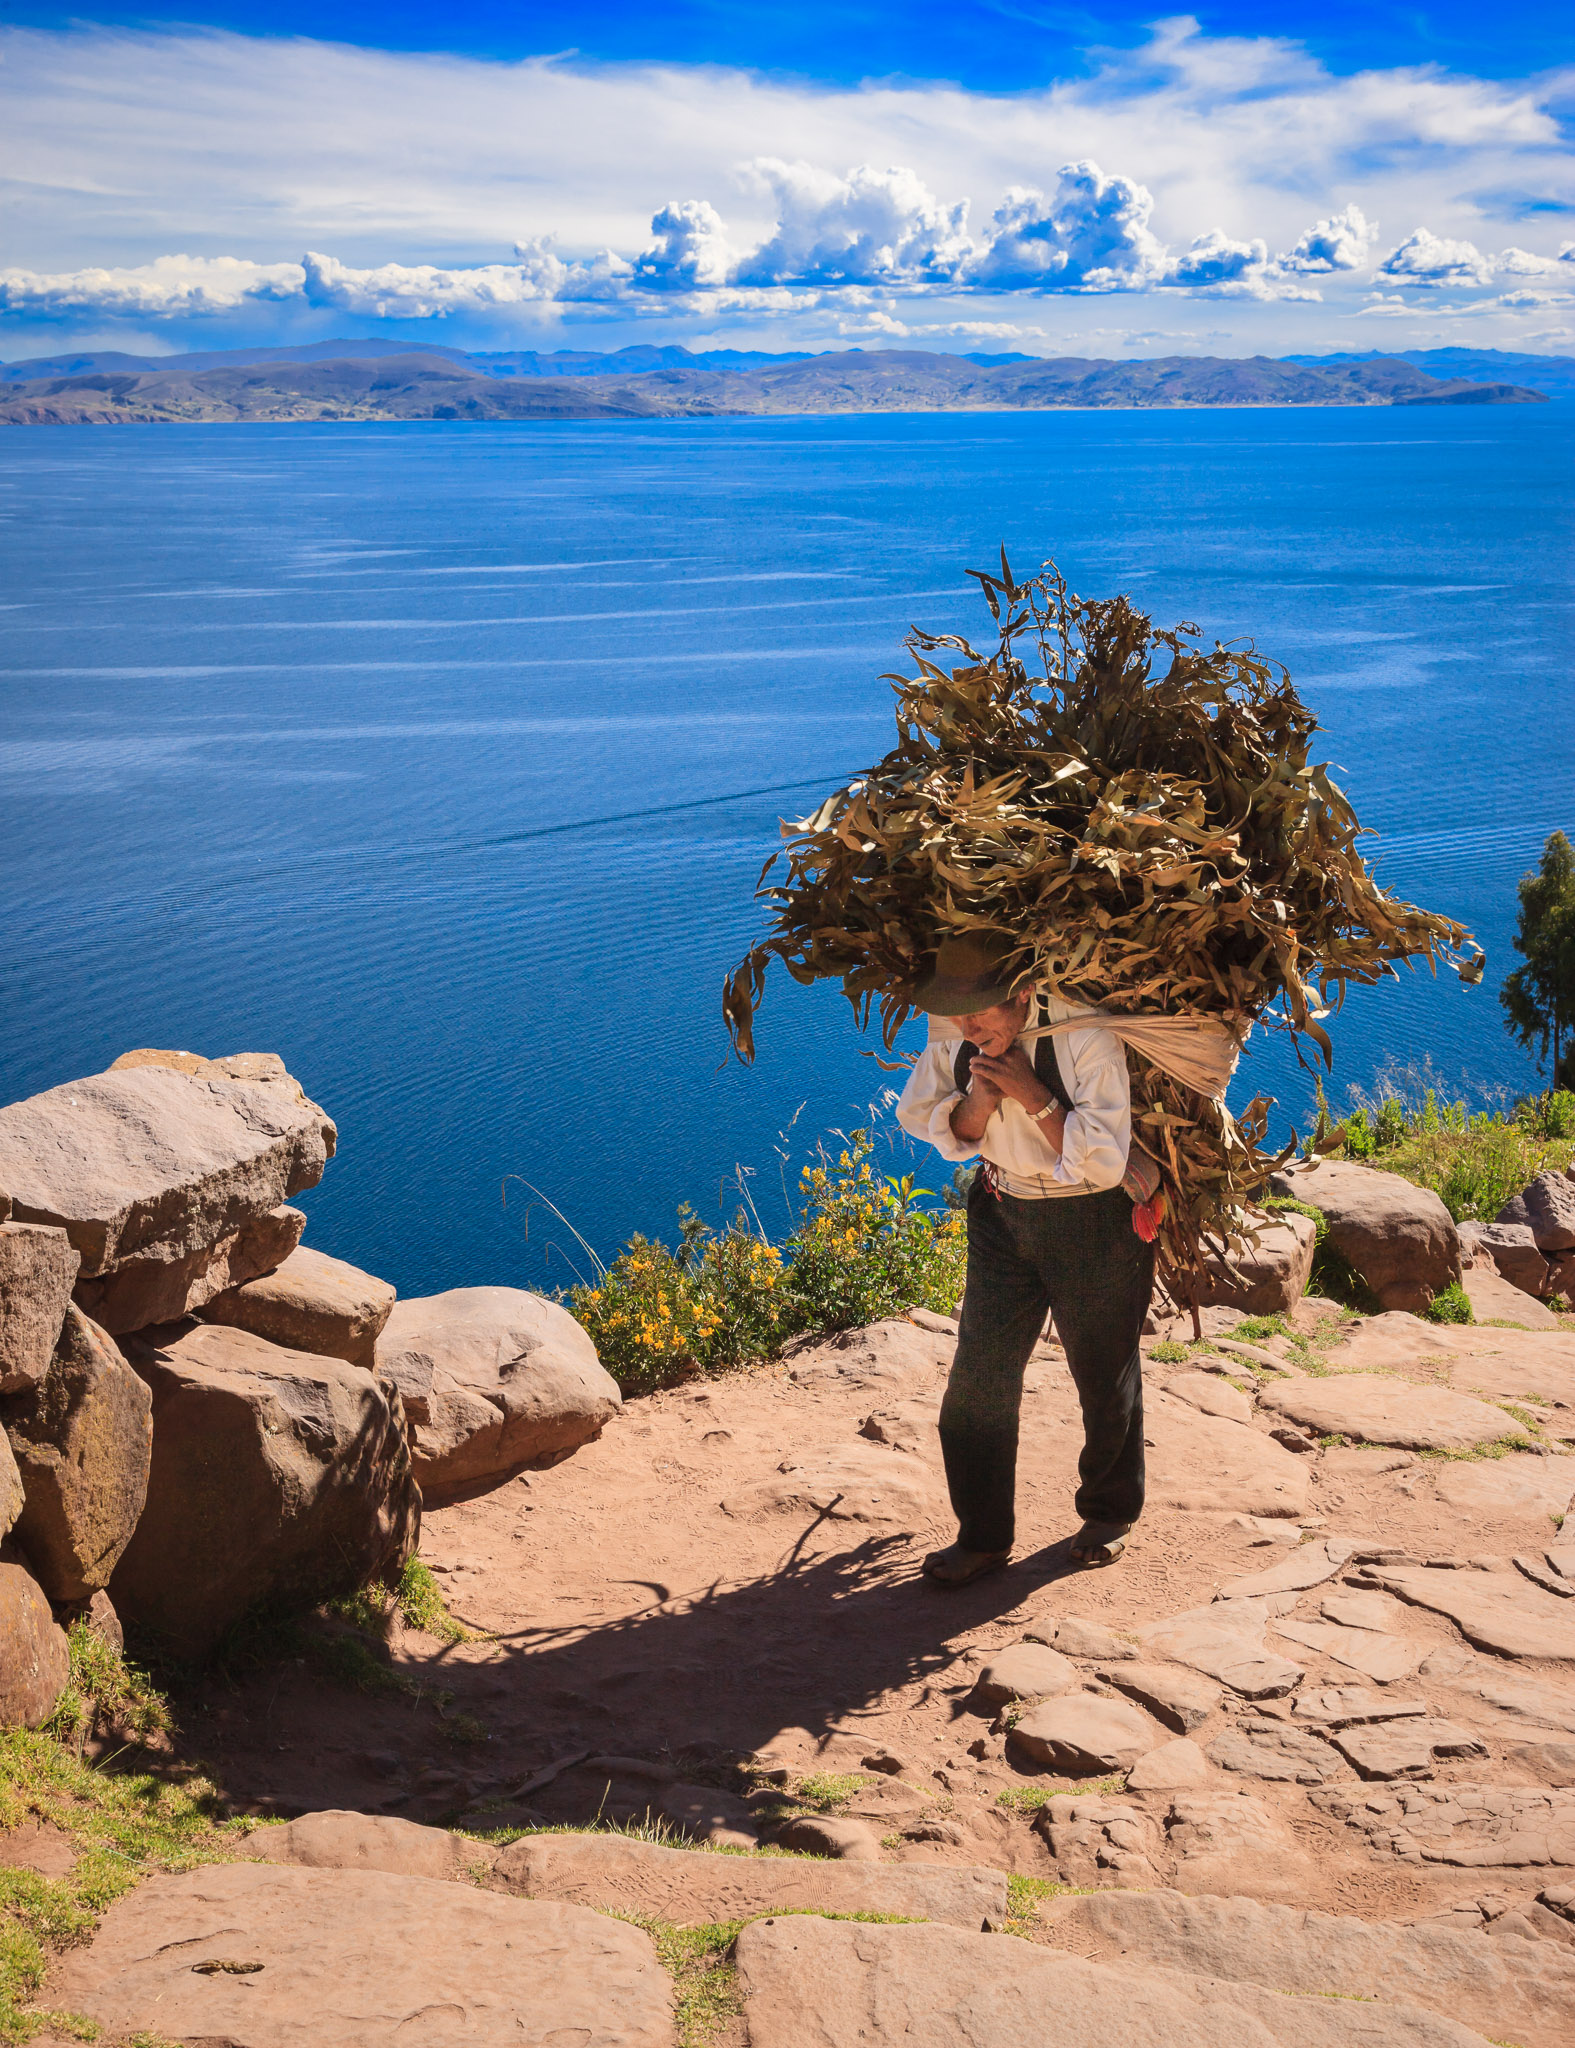 Gathering firewood on Isla Taquile, Lake Titicaca